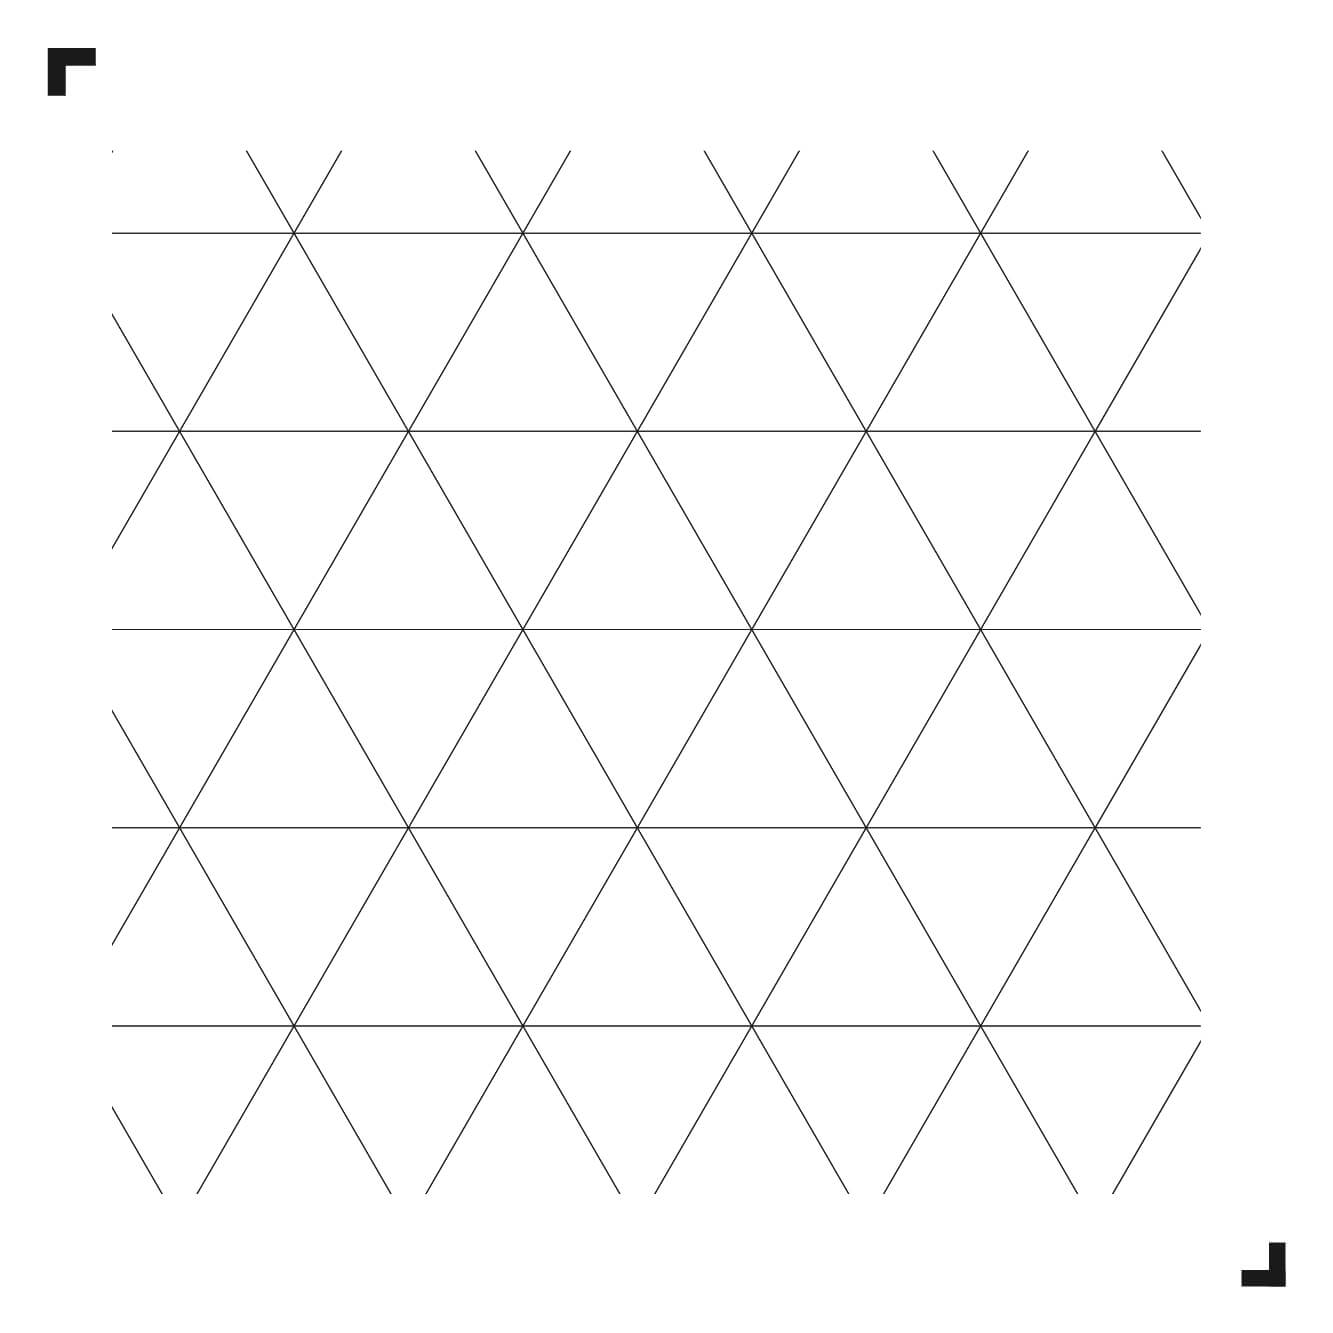 schwarz-weiße Zeichnung des Dreiecksmusters - Moduleo Moods - Luxury Vinyl Tiles - Creative flooring